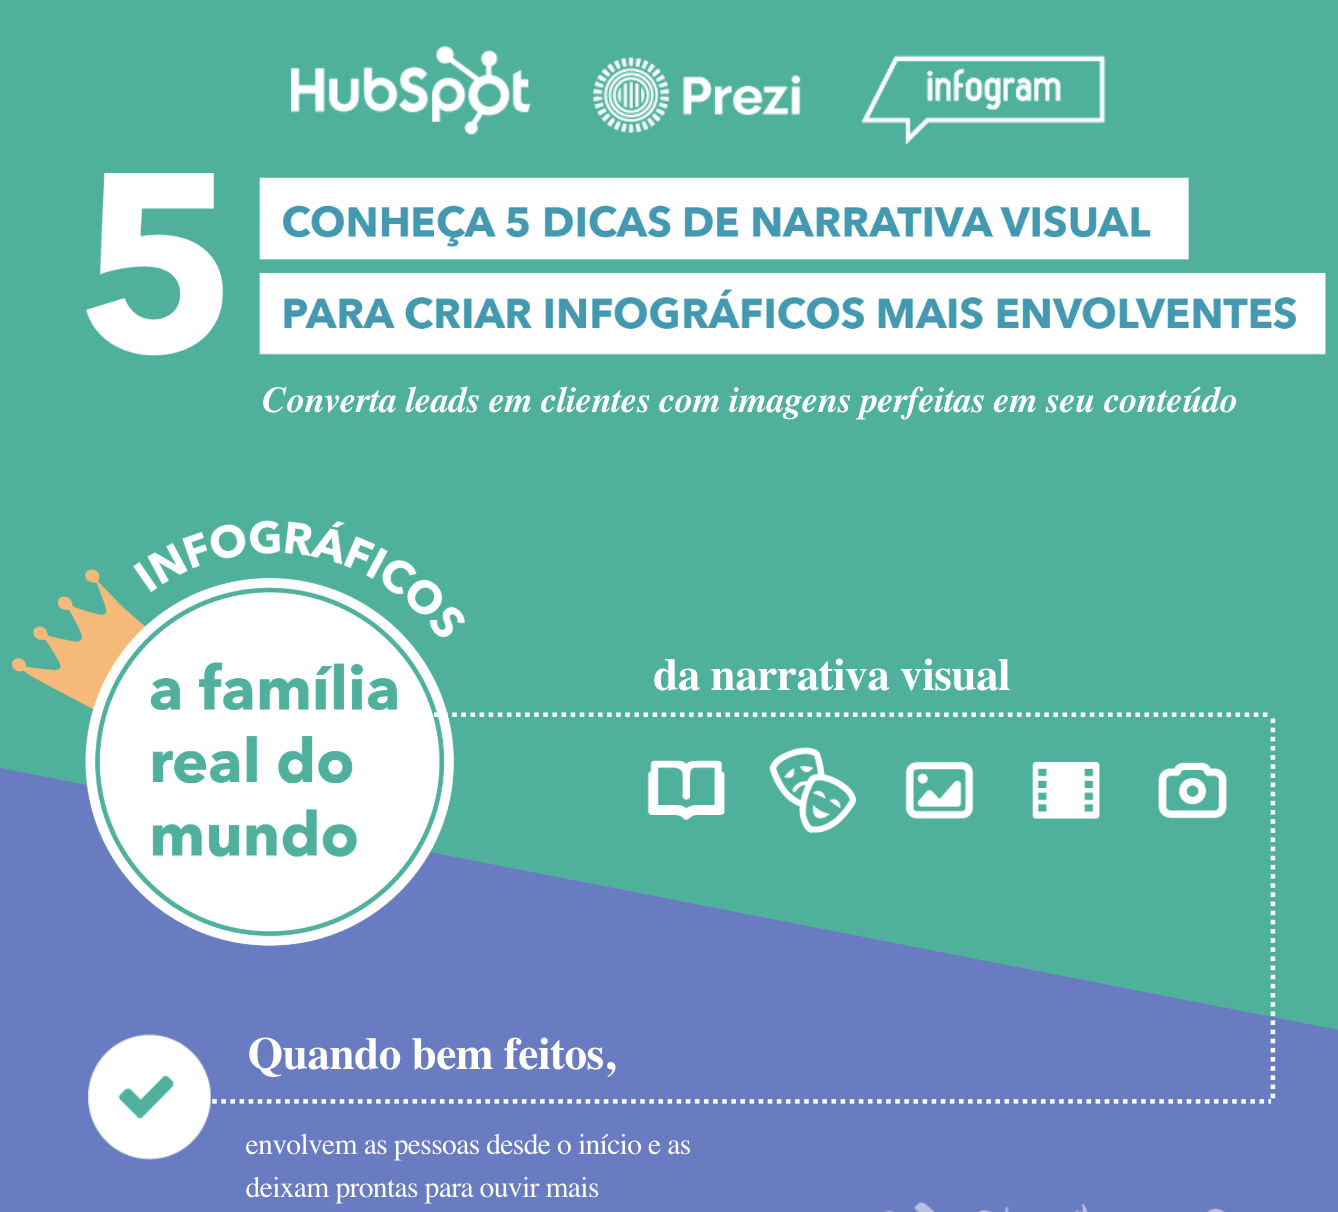 Narrativa visual - co-marketing HubSpot, Prezi, Infogram